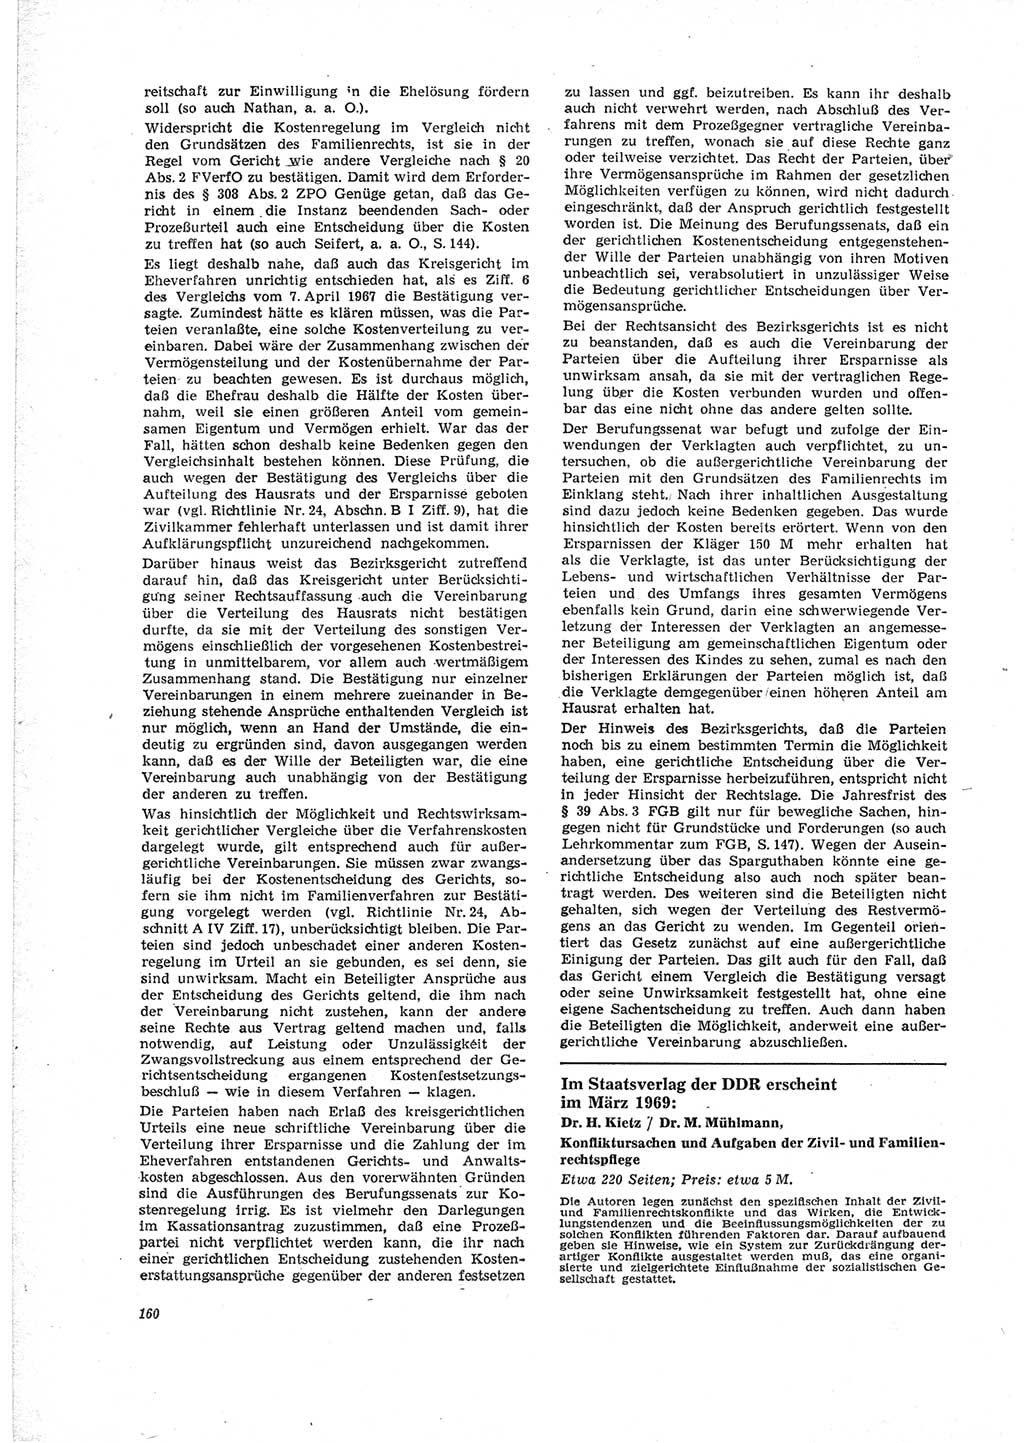 Neue Justiz (NJ), Zeitschrift für Recht und Rechtswissenschaft [Deutsche Demokratische Republik (DDR)], 23. Jahrgang 1969, Seite 160 (NJ DDR 1969, S. 160)